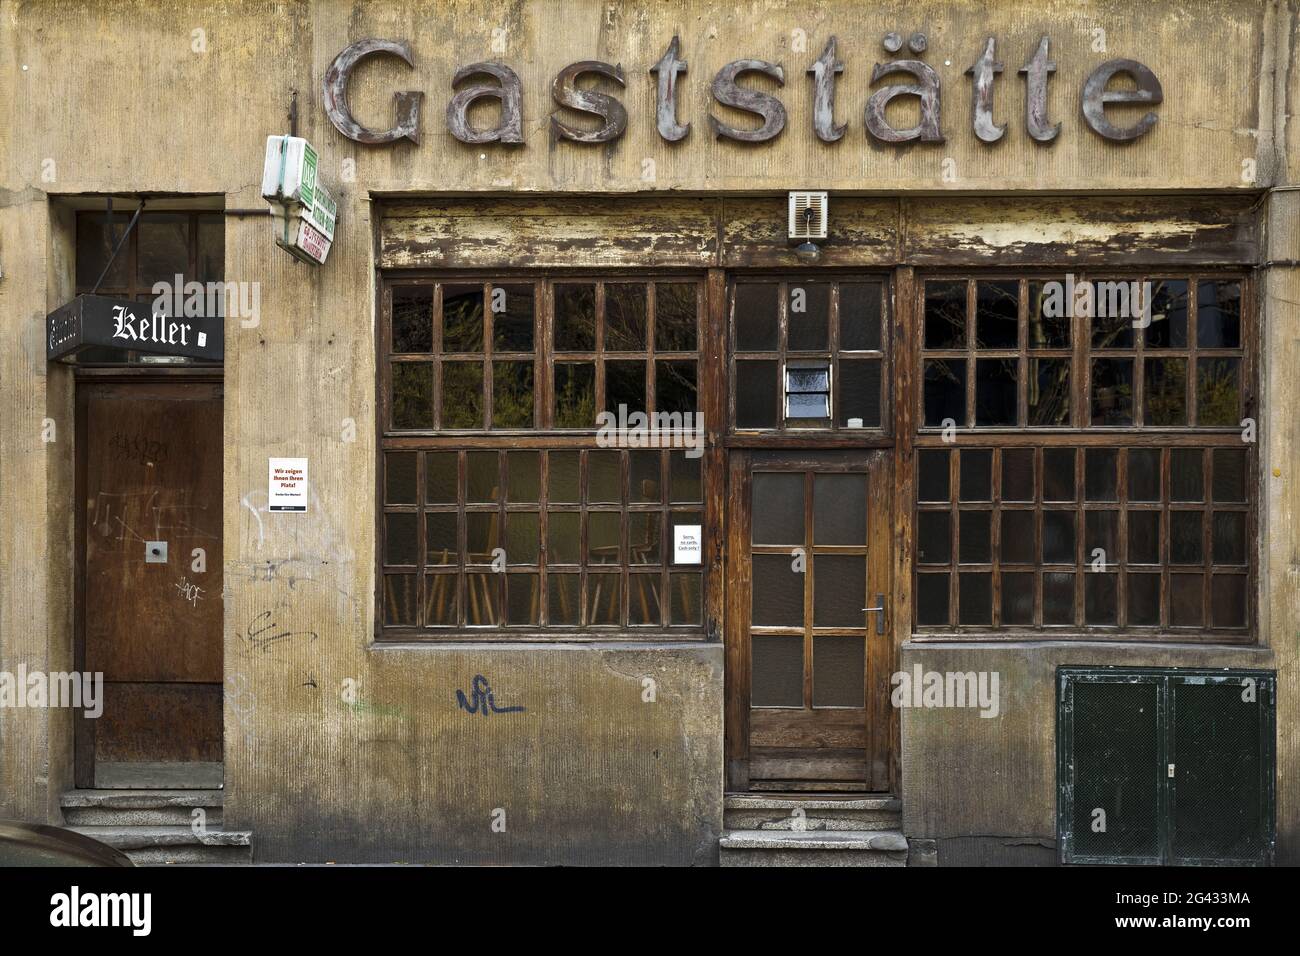 Gaststaette Lommerzheim, also called Lommi, Koelsche Kult pub in the Deutz district, Cologne Stock Photo